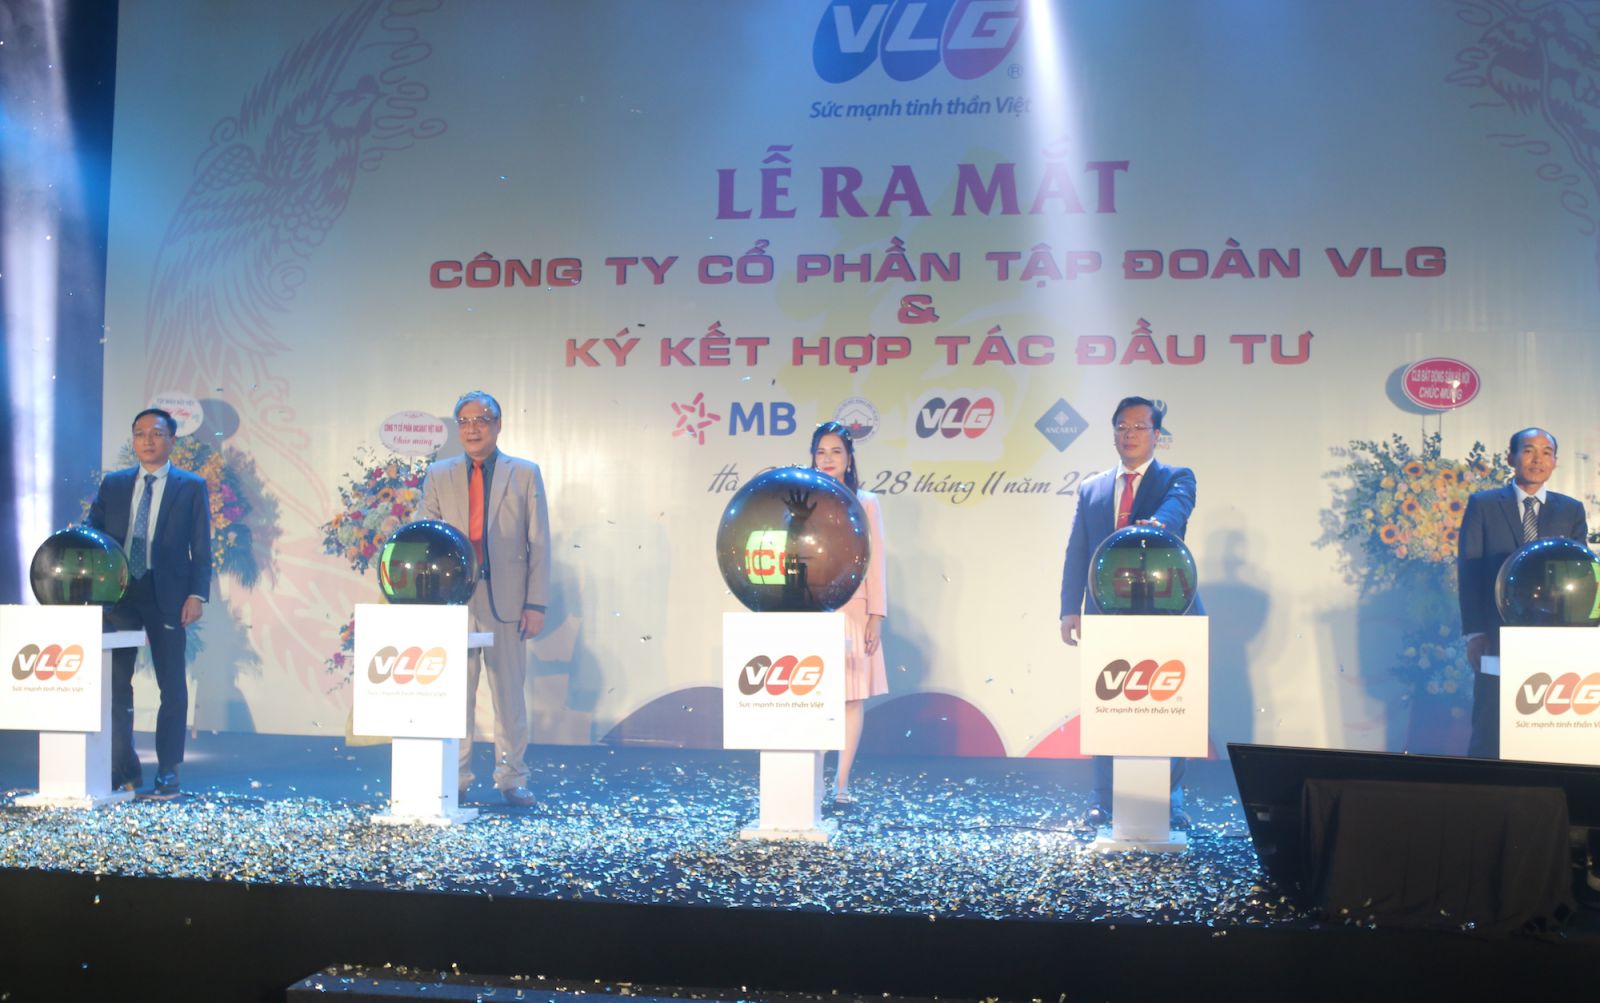 Công ty cổ phần Tập đoàn VLG ra mắt và ký kết hợp tác đầu tư